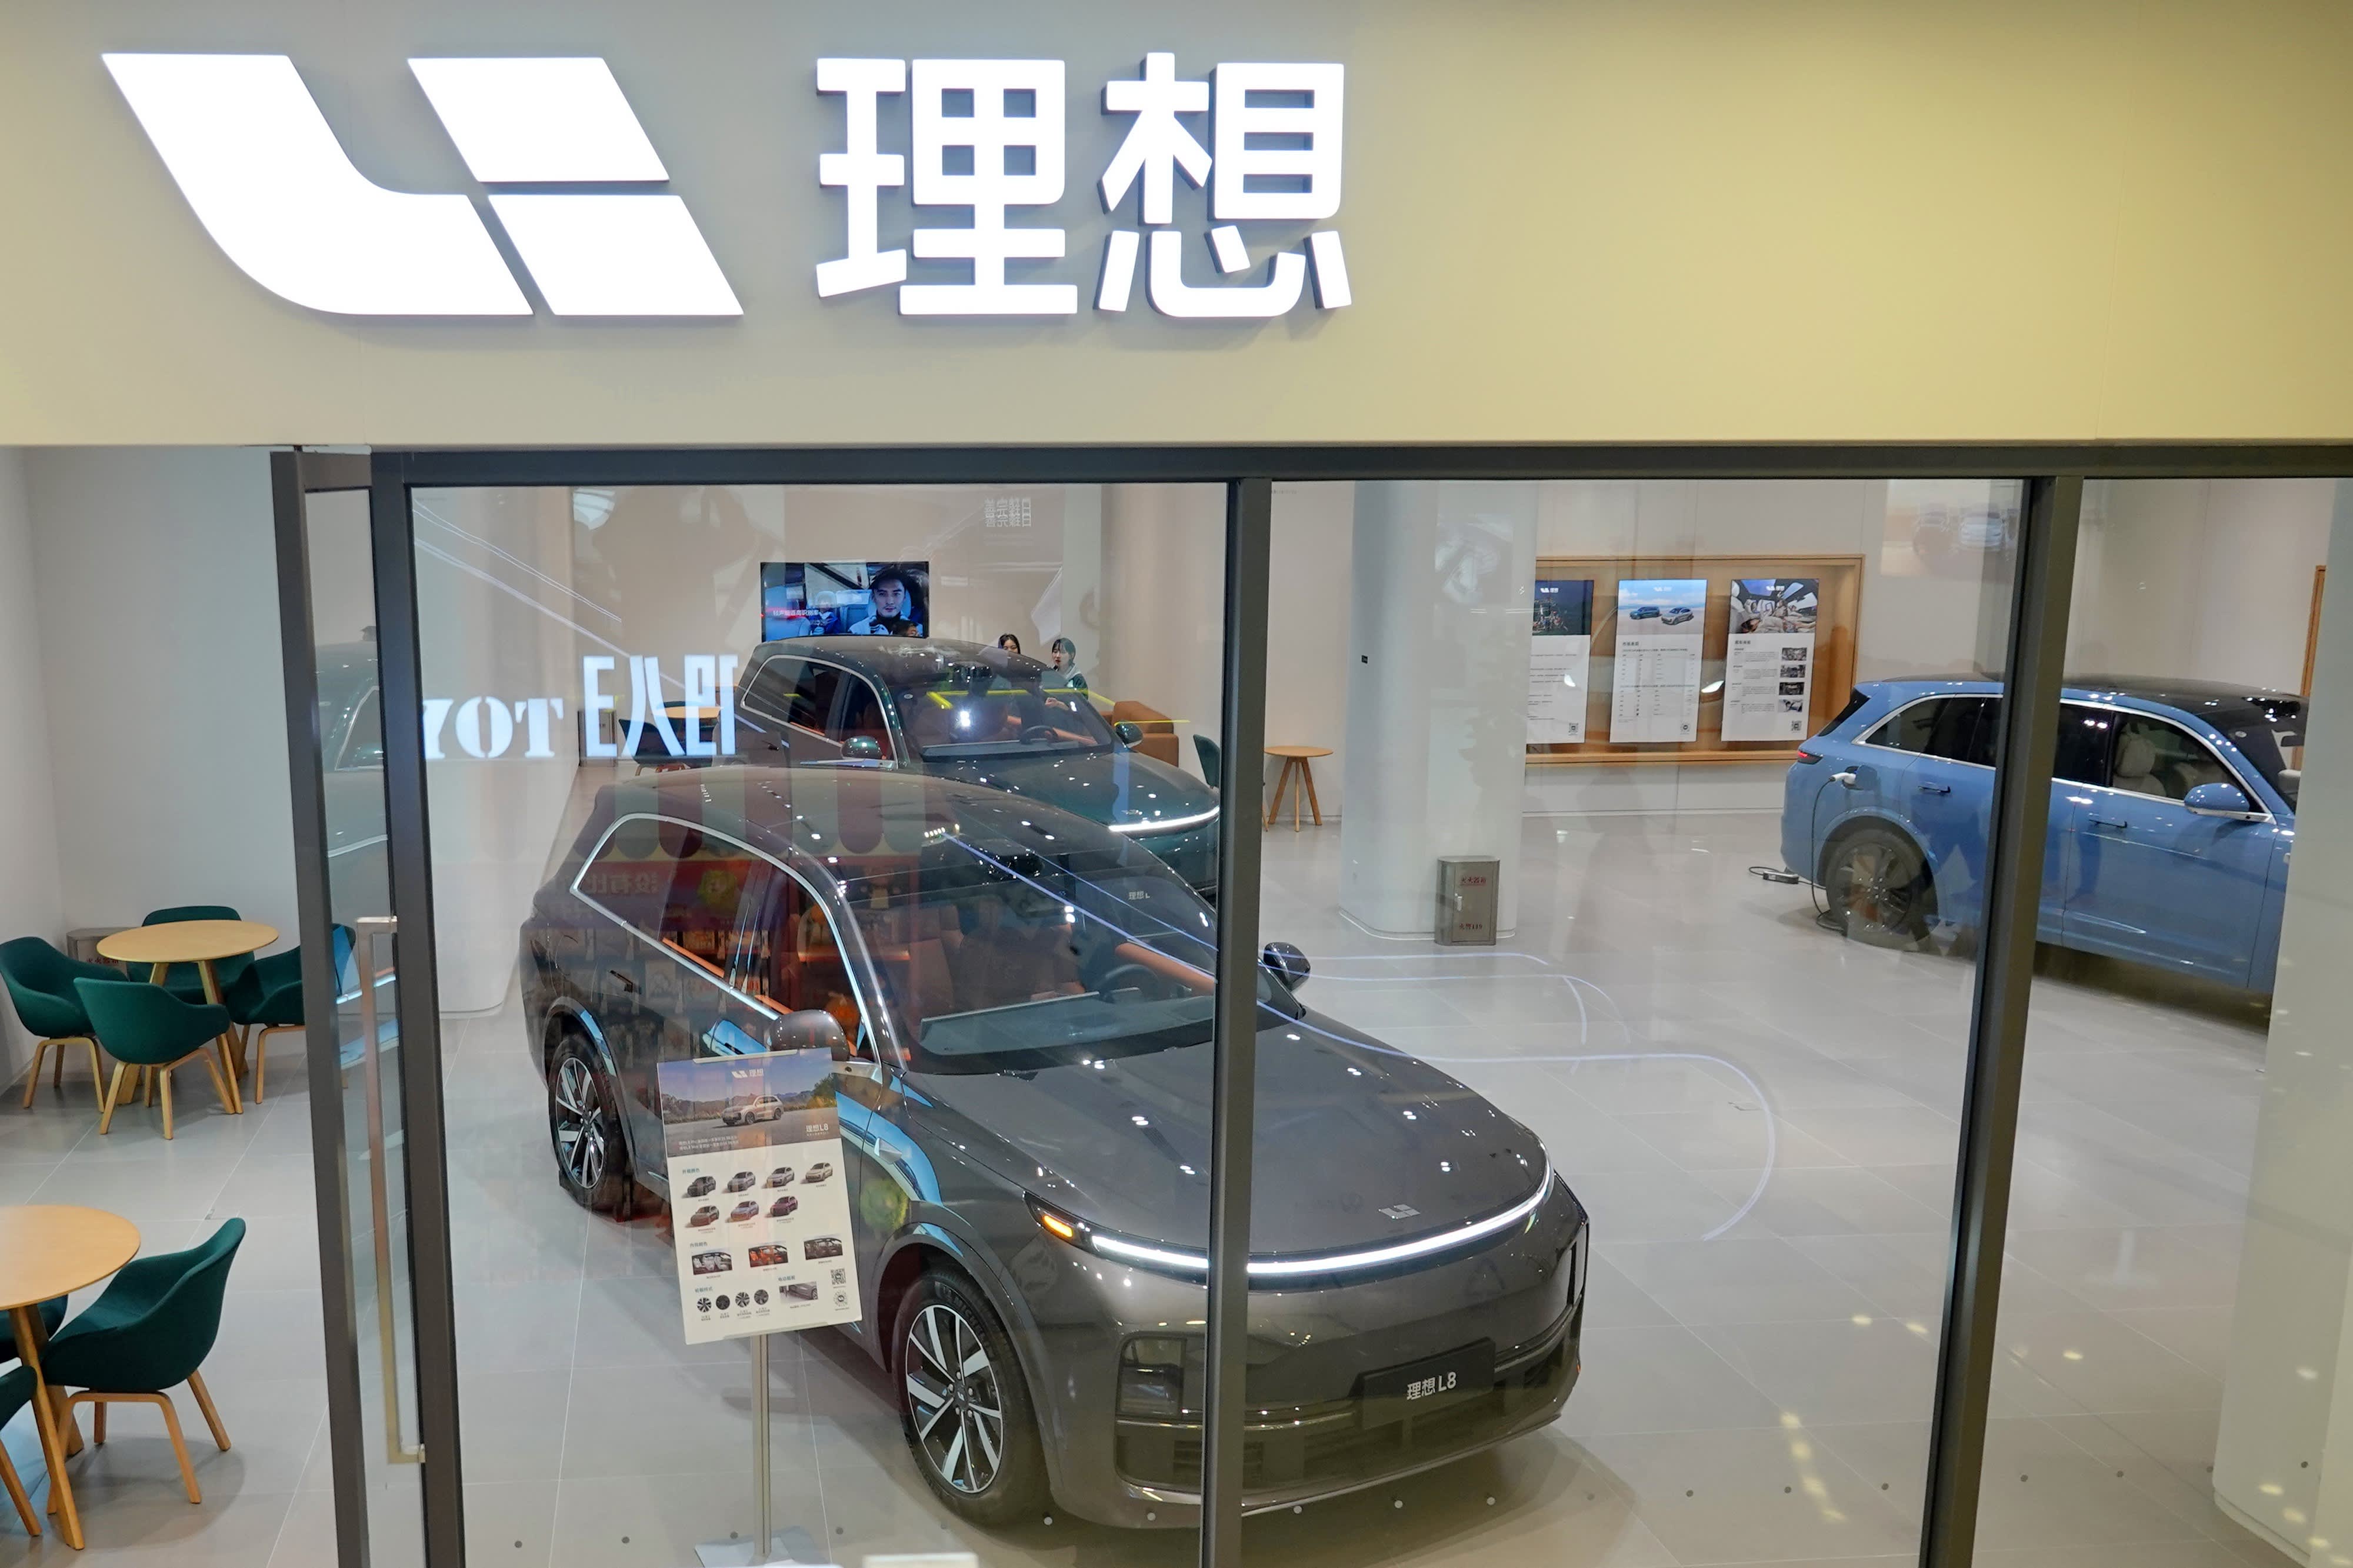 中国电动汽车初创公司理想汽车表示 5 月份汽车交付量翻了一番